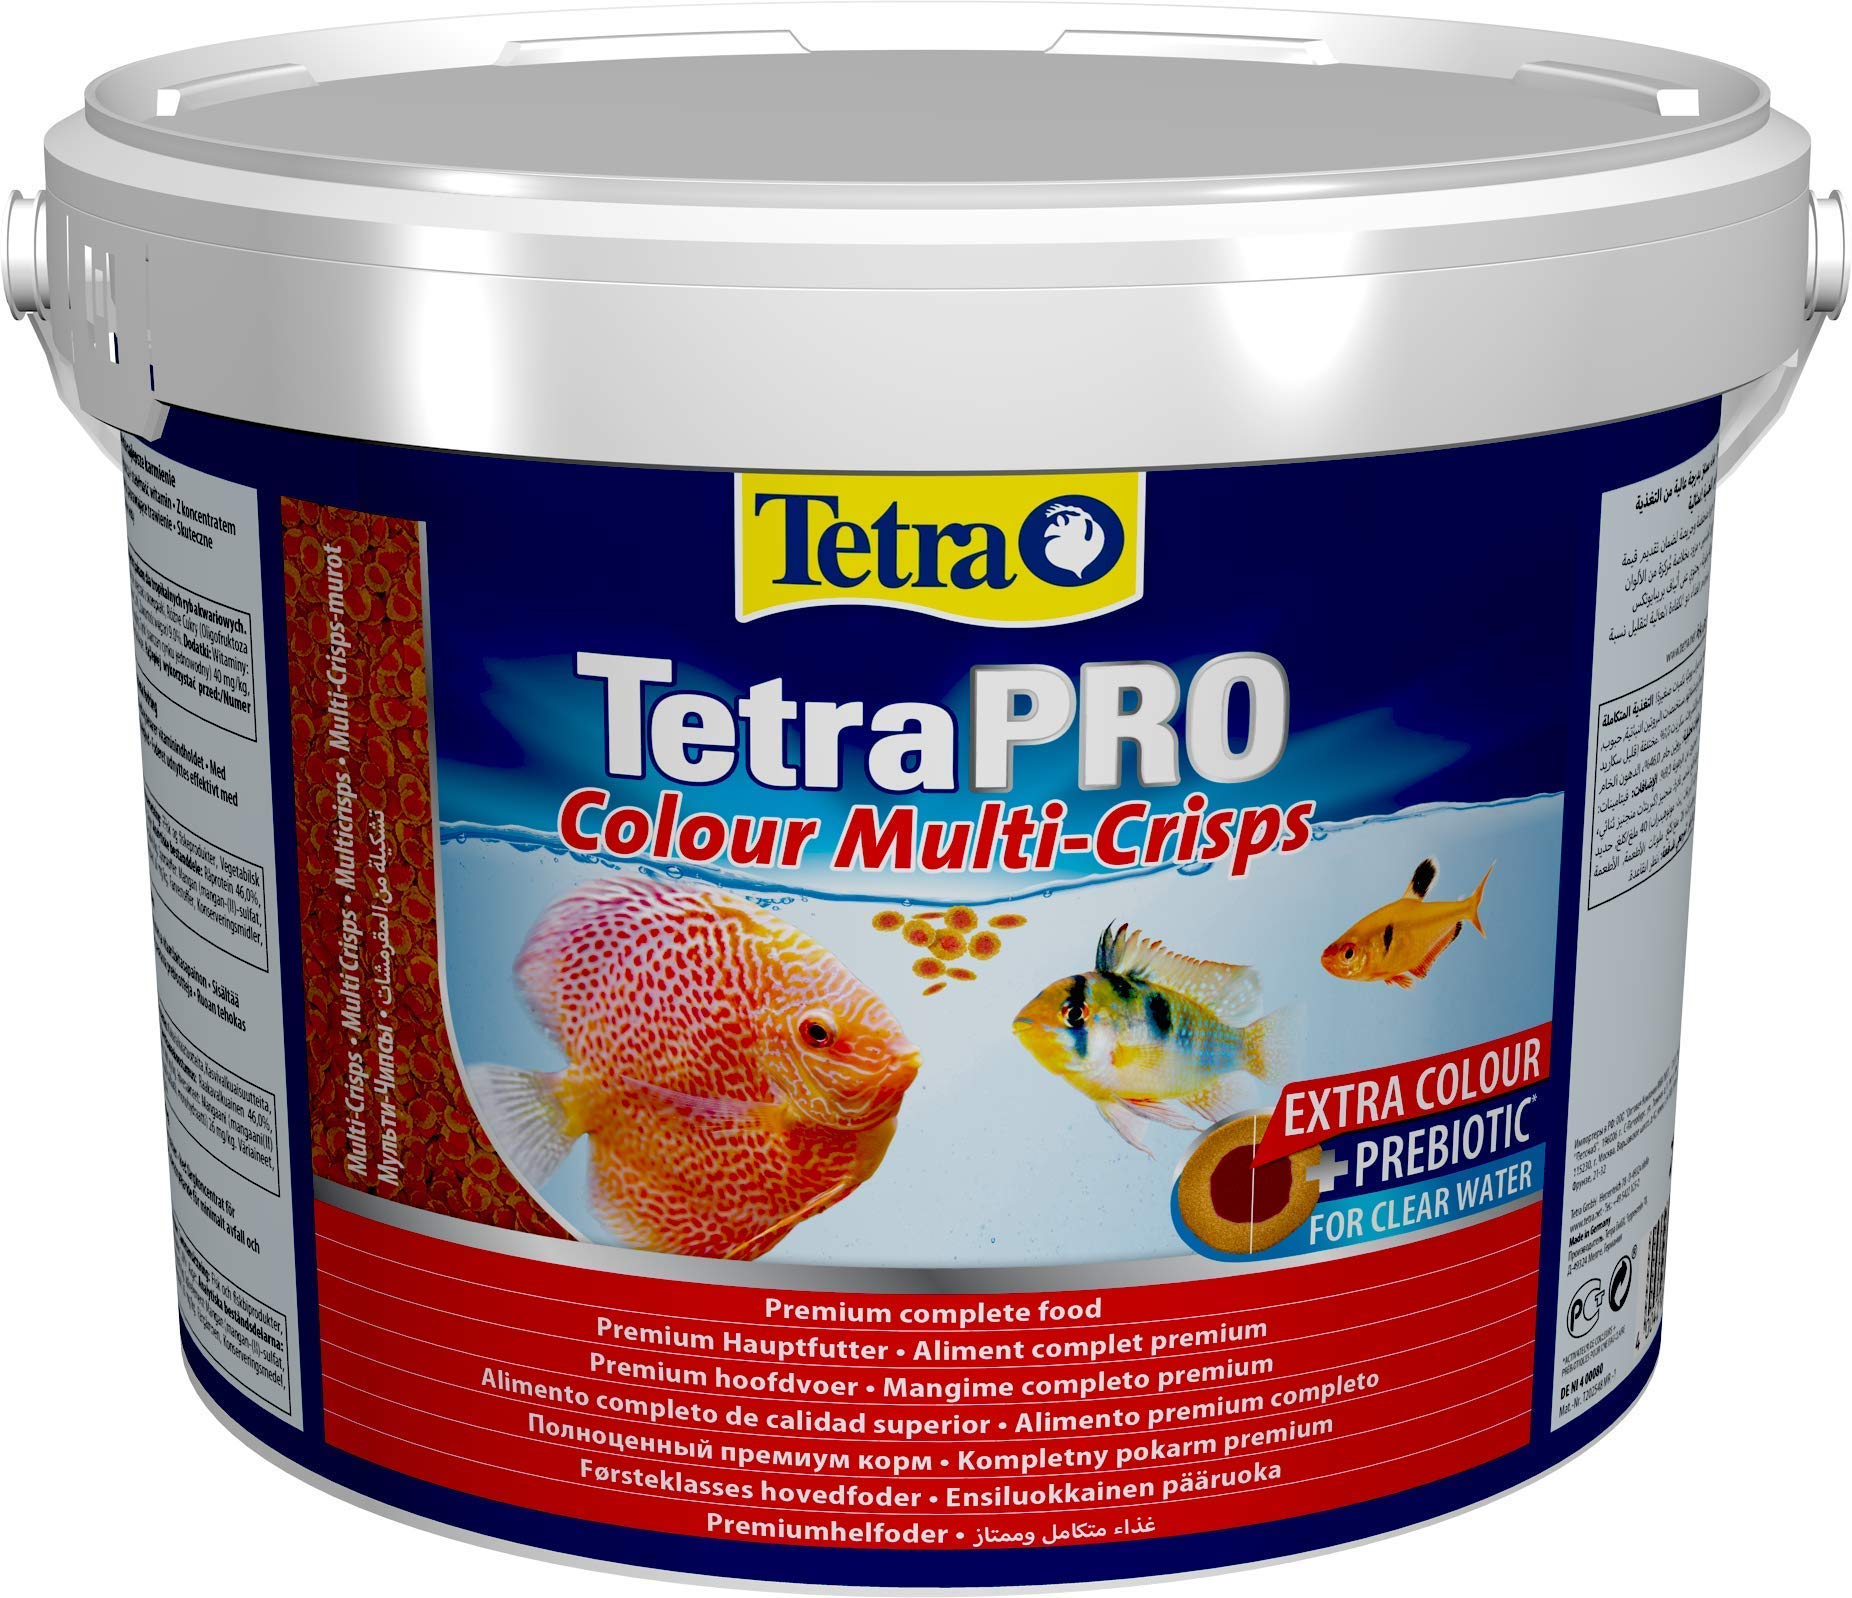 Tetra Pro Colour Multi-Crisps - Premium Fischfutter mit Farbkonzentrat für schöne, farbenprächtige Fische, 10 L Eimer